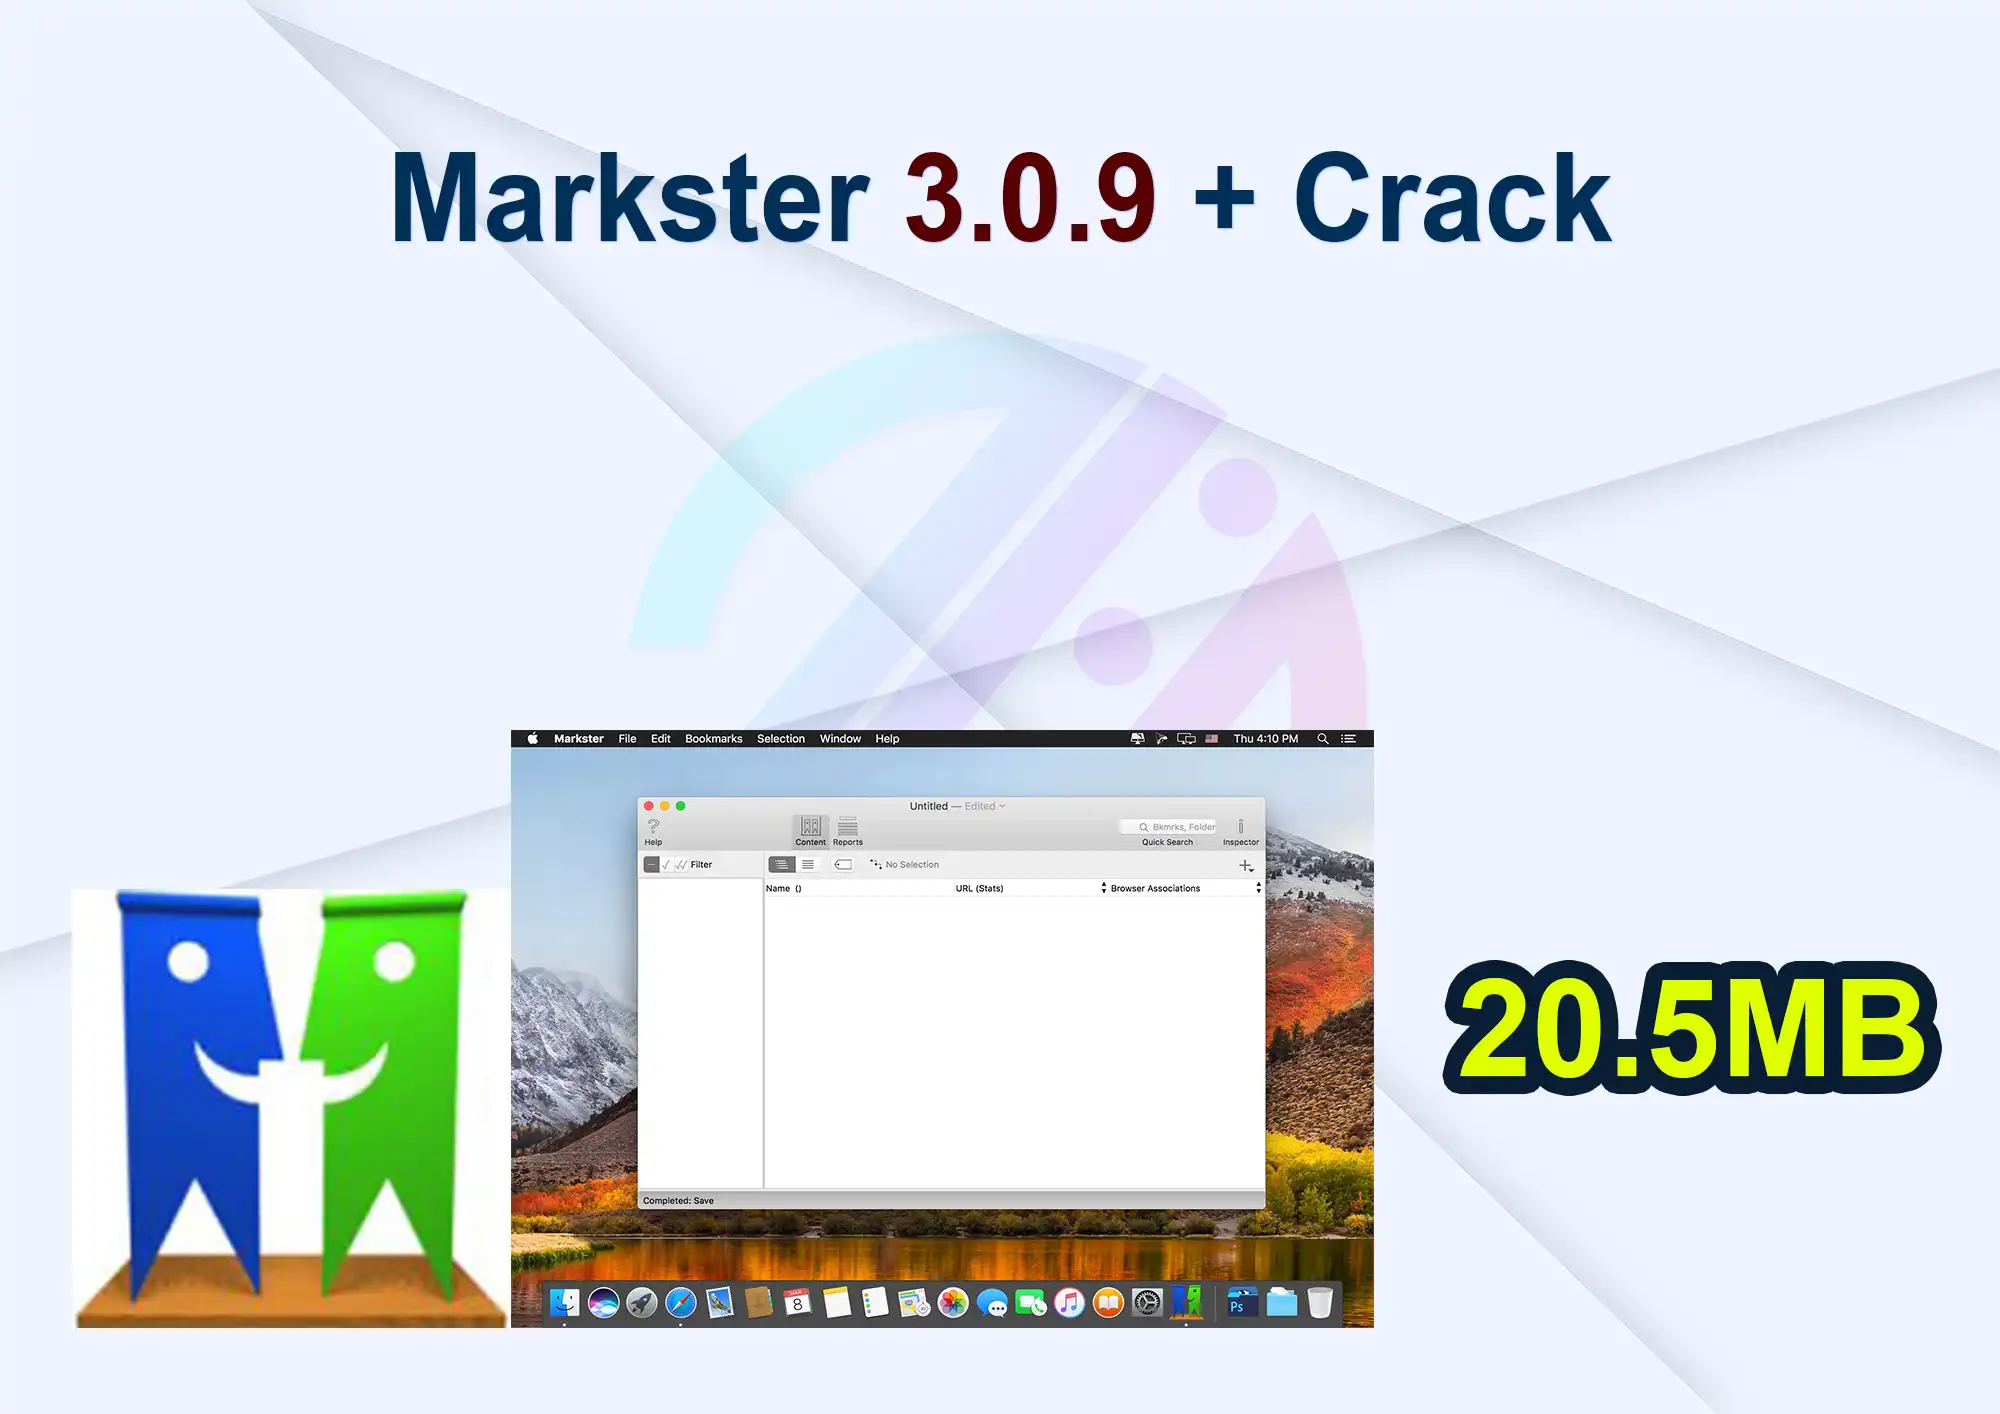 Markster 3.0.9 + Crack